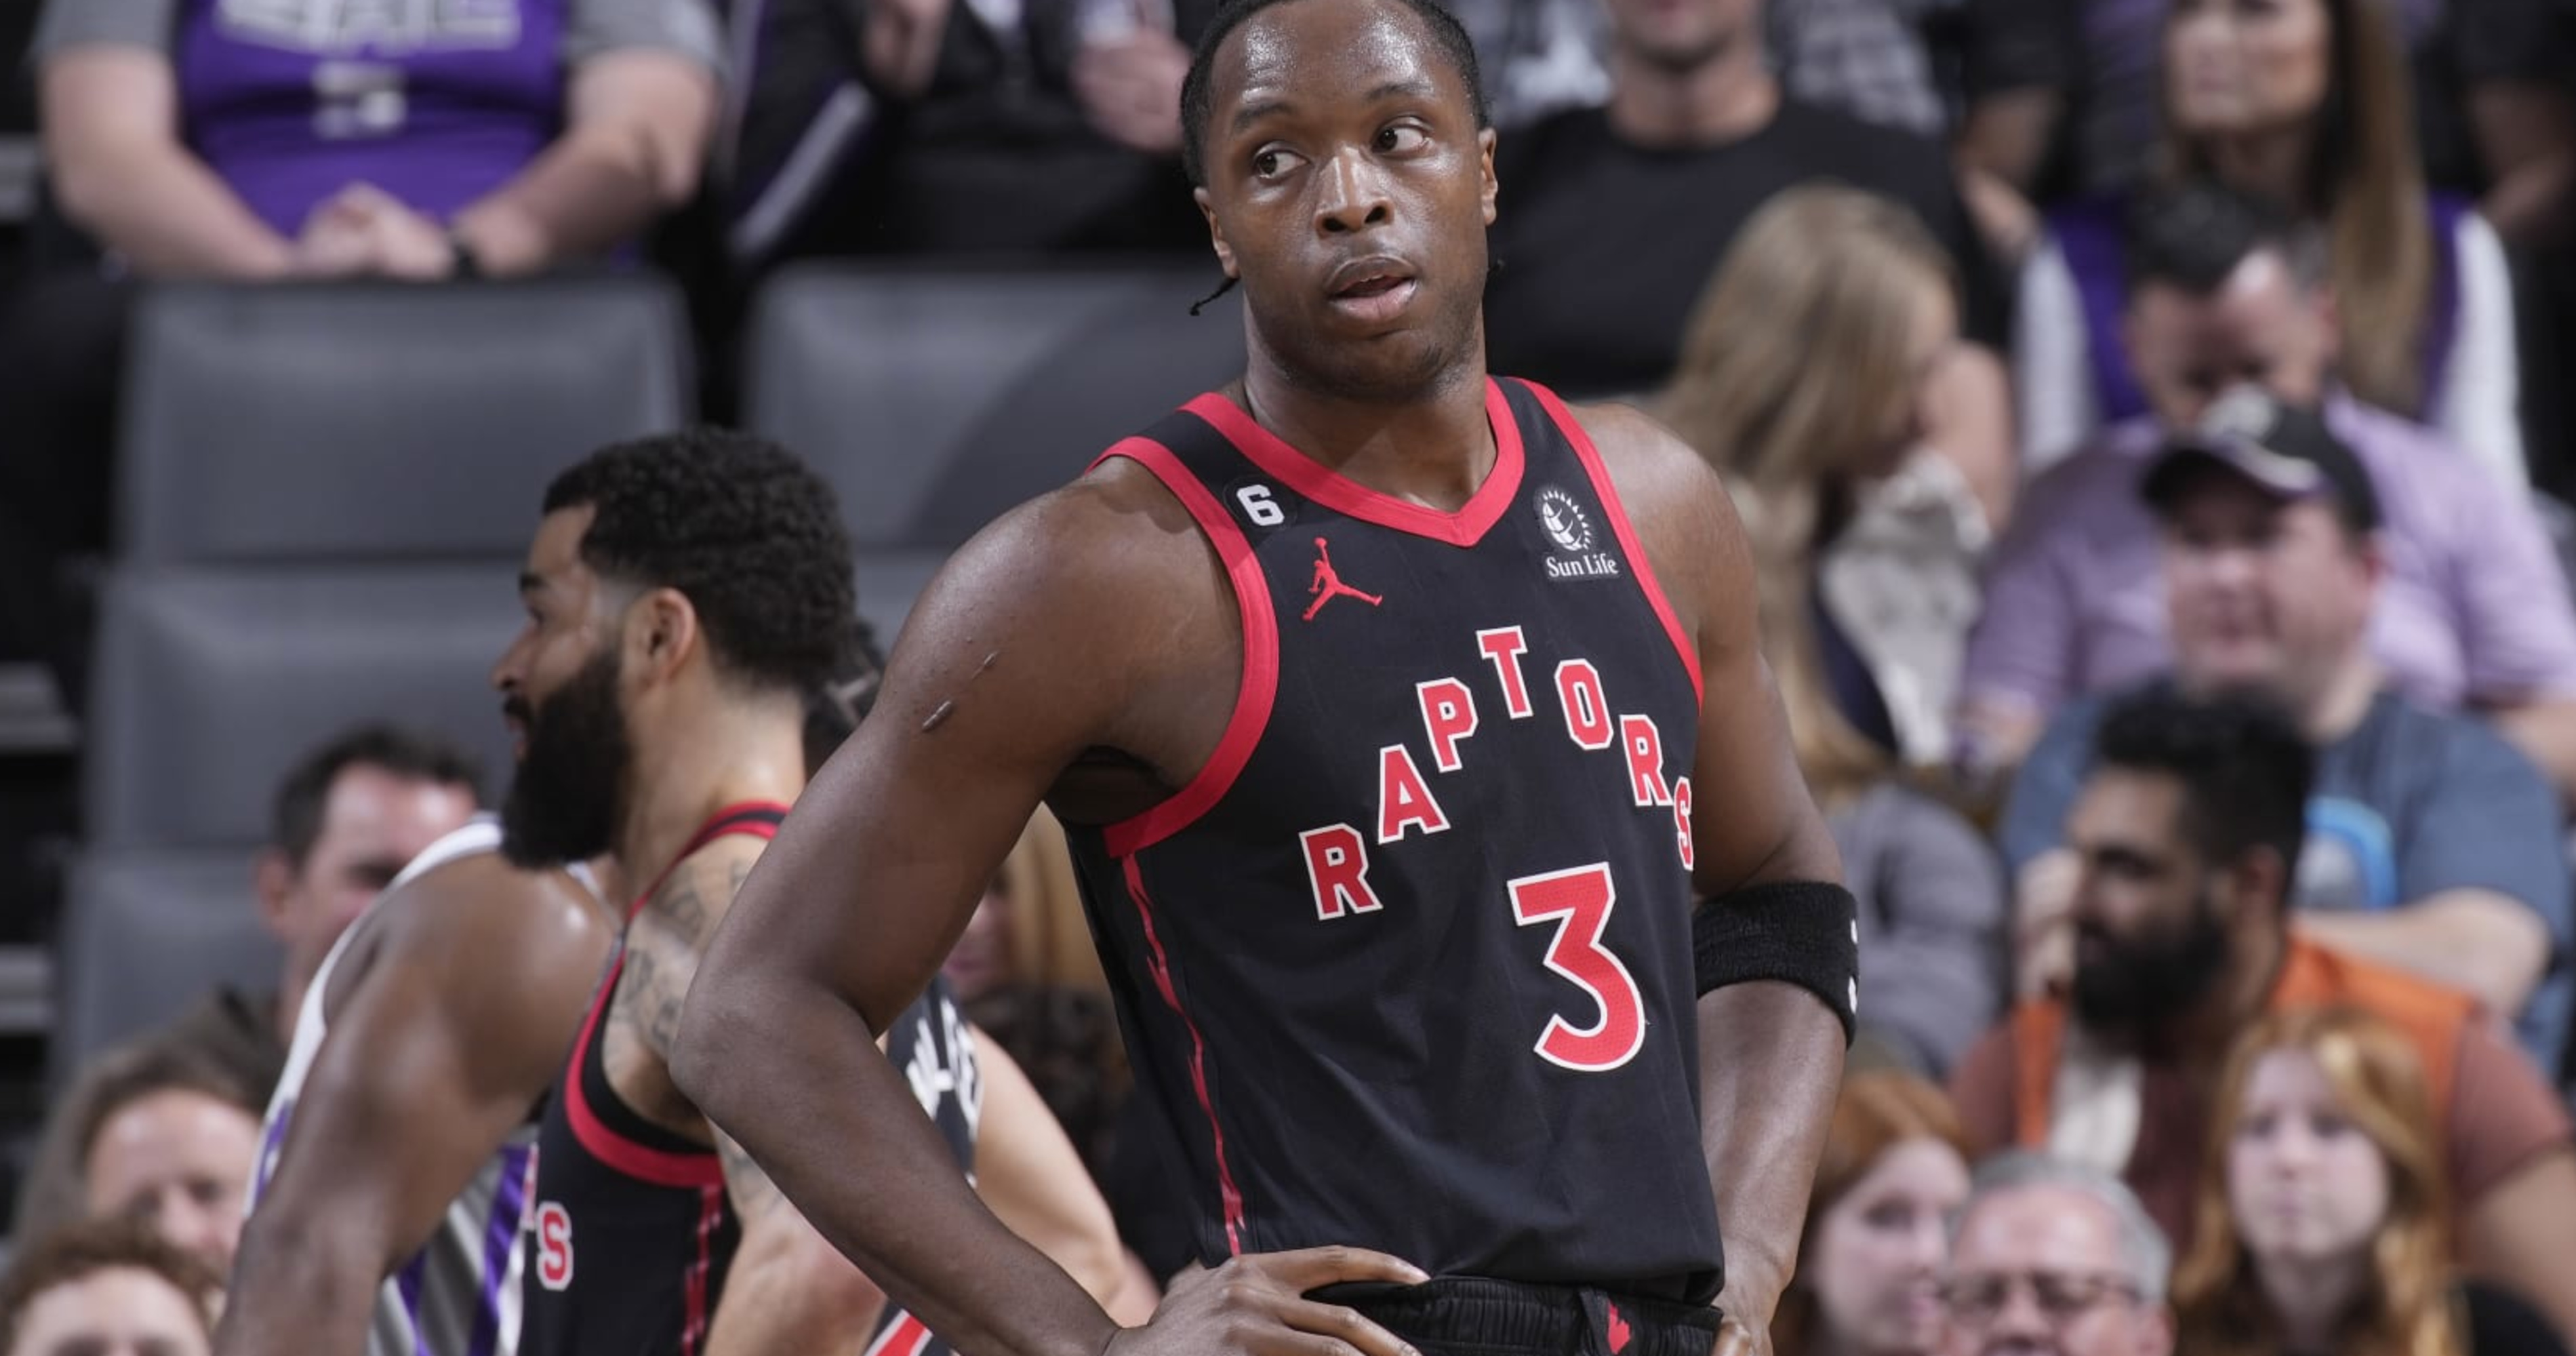 O.G. Anunoby 3 Toronto Raptors basketball player poster shirt